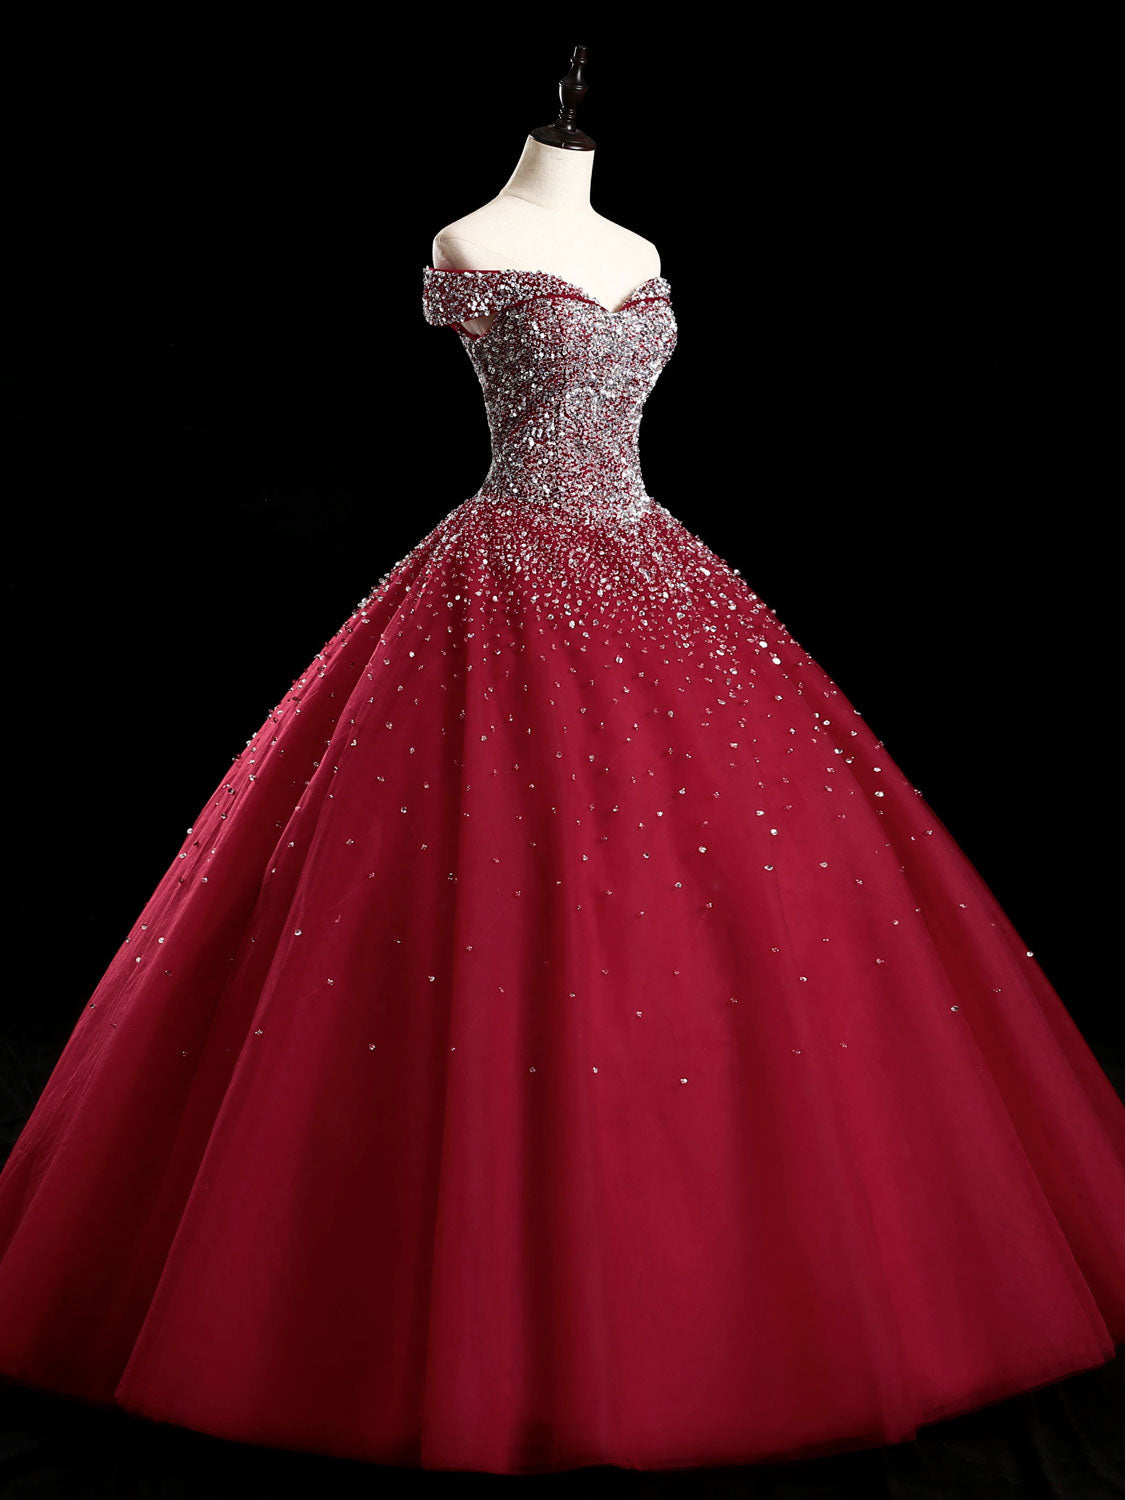 Bridesmaids Dress Pink, Burgundy Off Shoulder Tulle Sequin Long Prom Dress, Burgundy Sweet 16 Dress